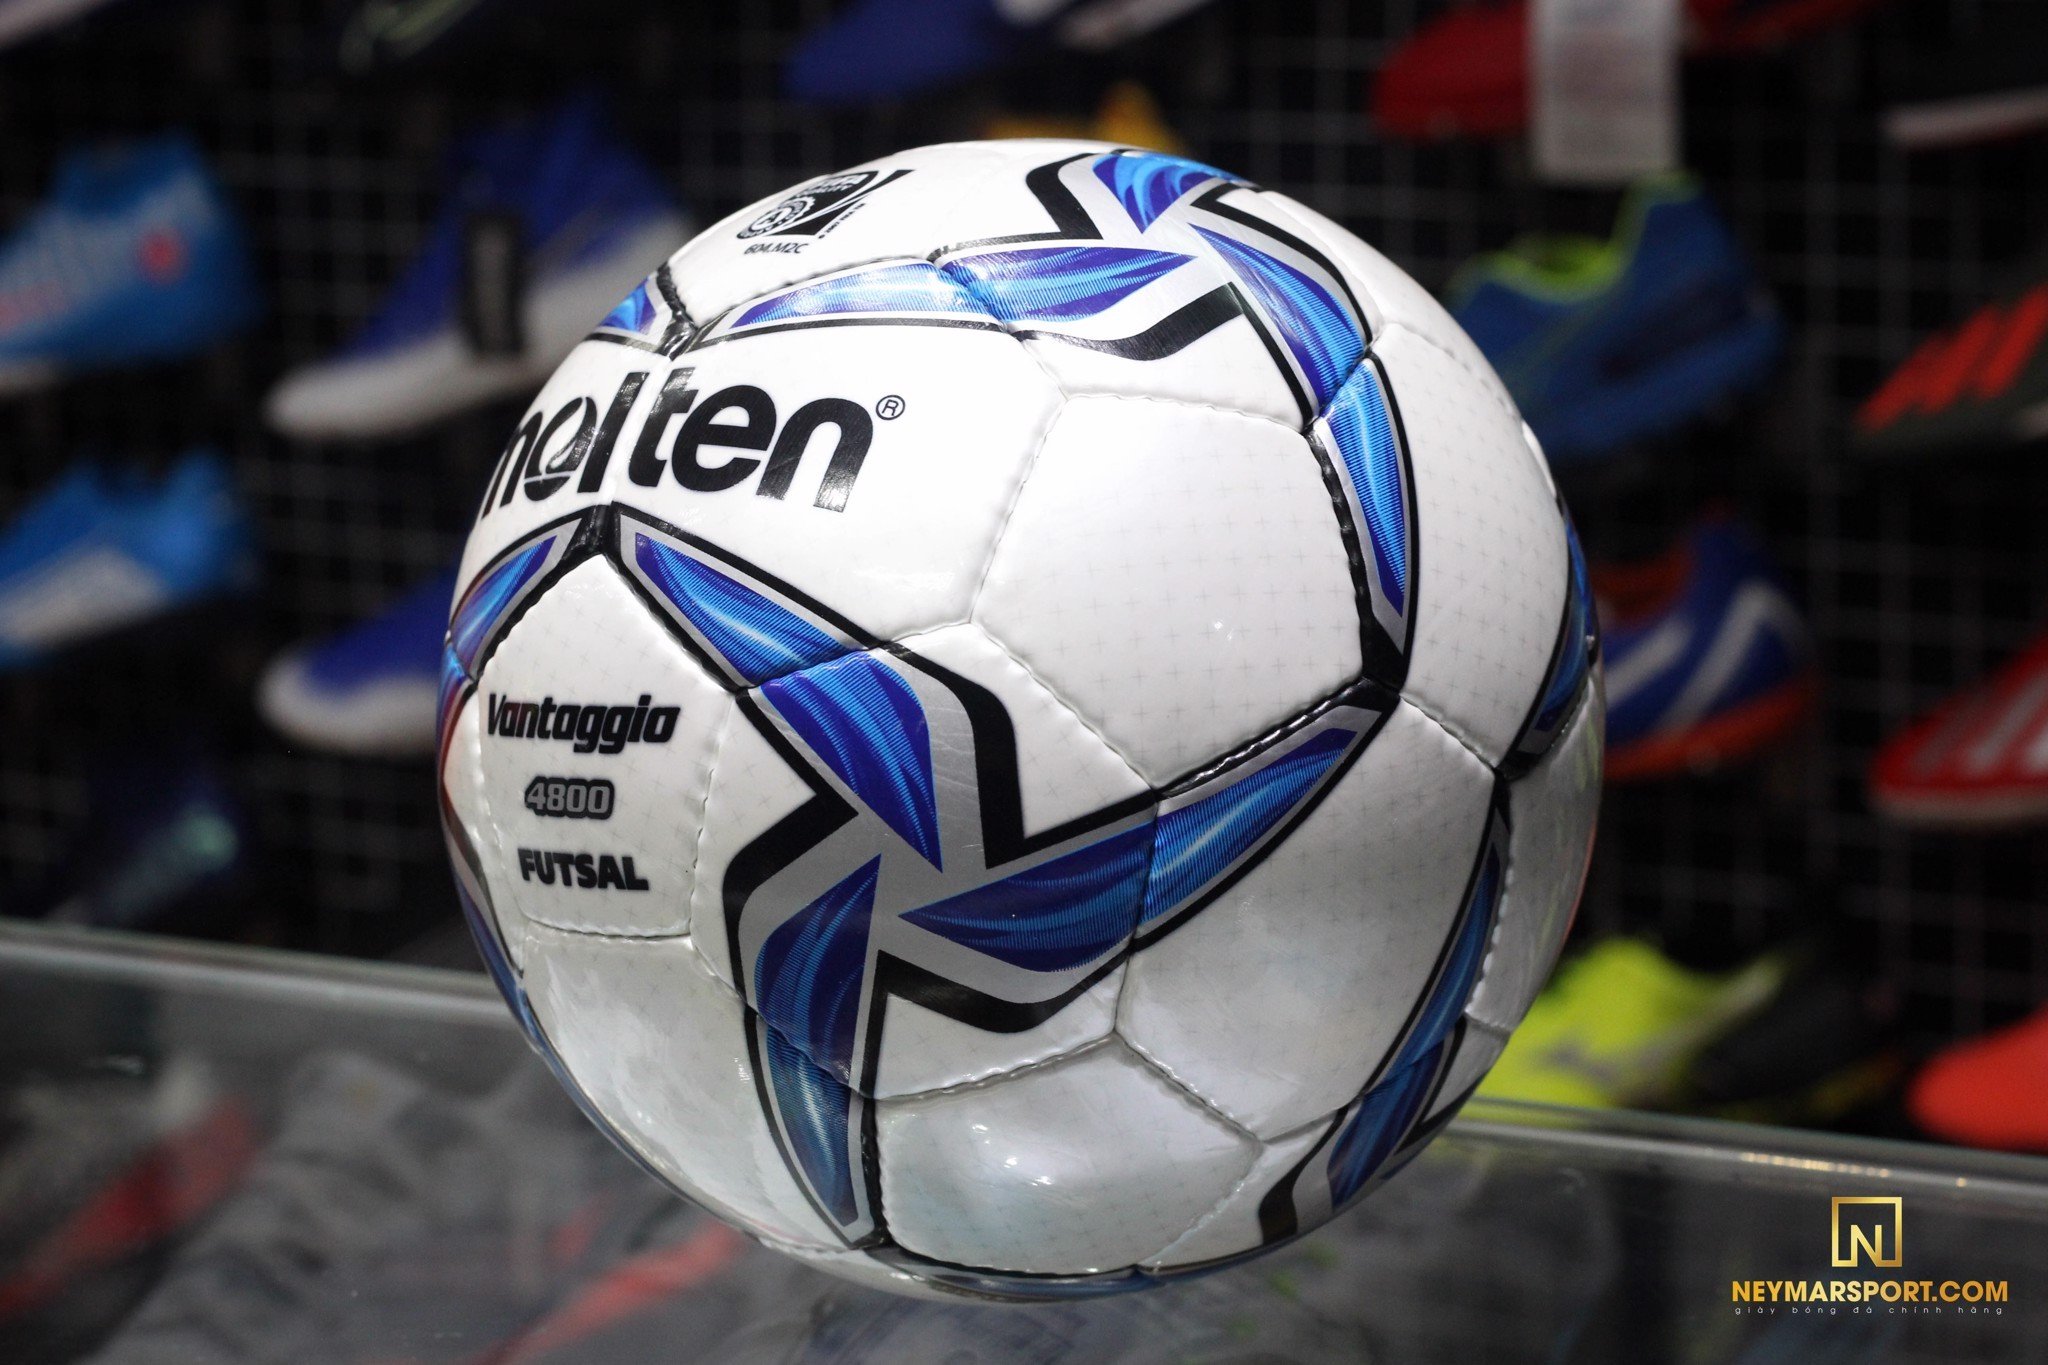 Bóng đá Futsal MOLTEN FIFA F9V4800